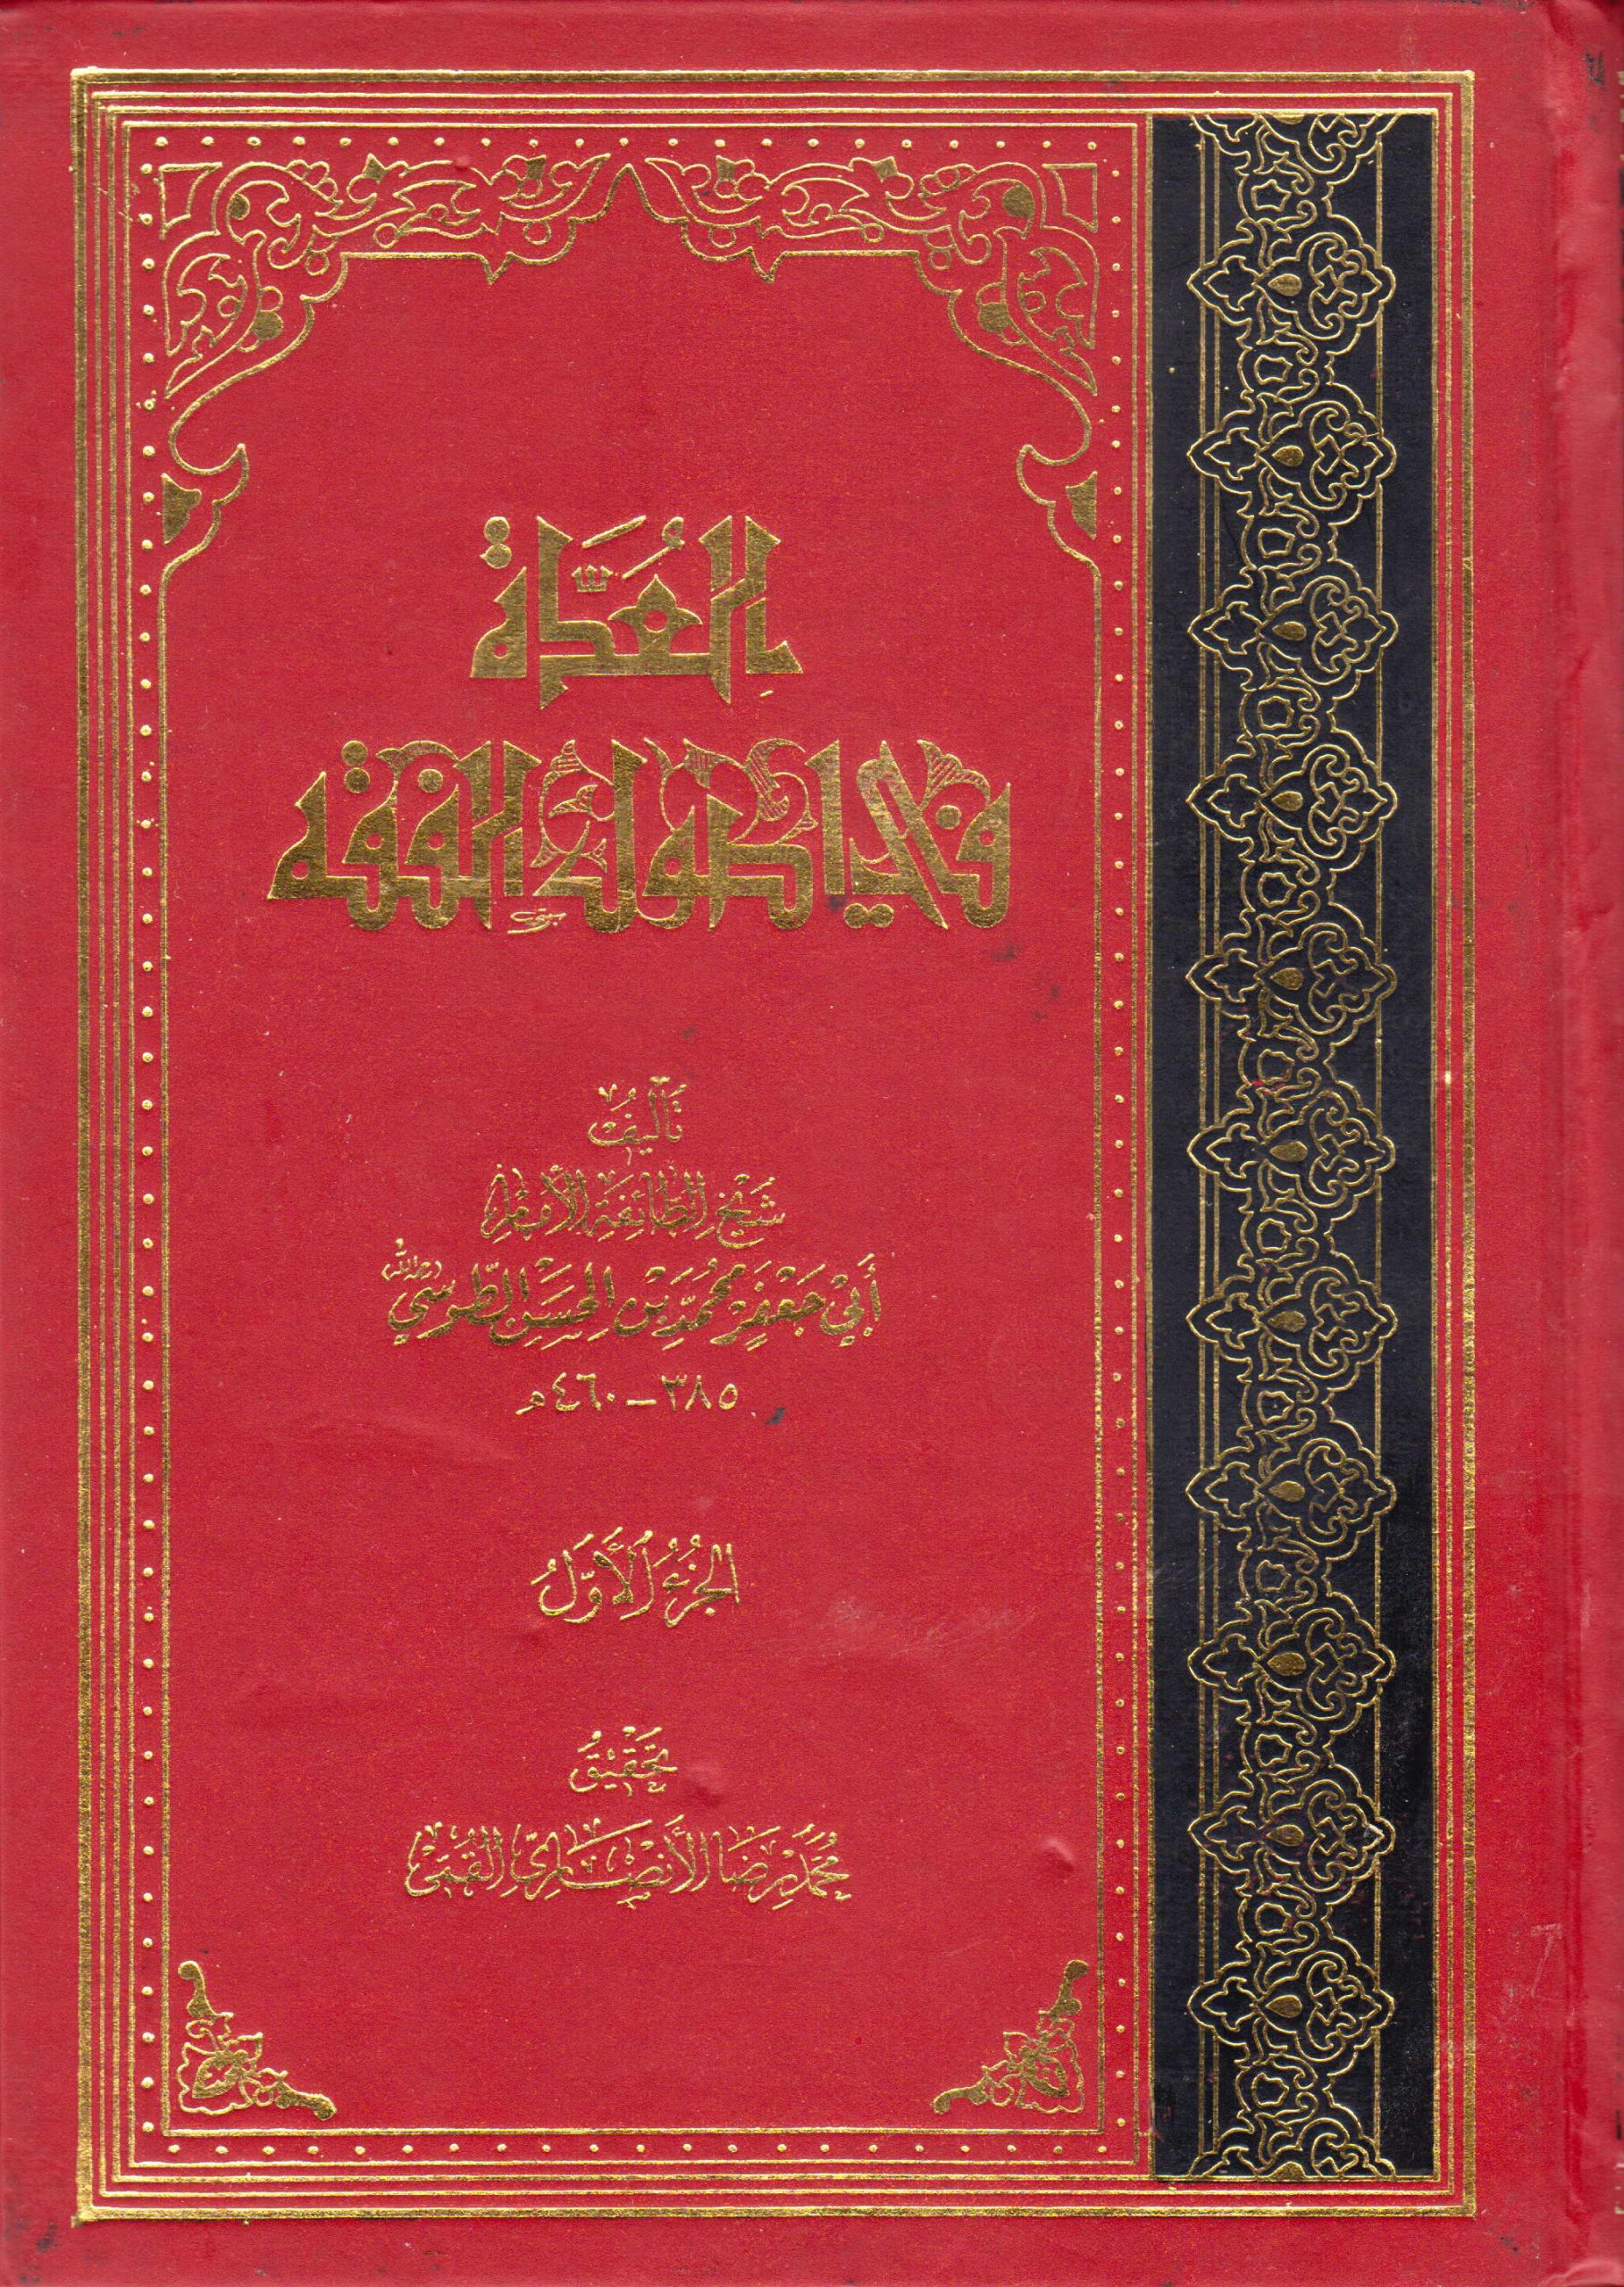 تحميل كتاب العدة في أصول الفقه للإمام الطوسي الشيعي pdf 